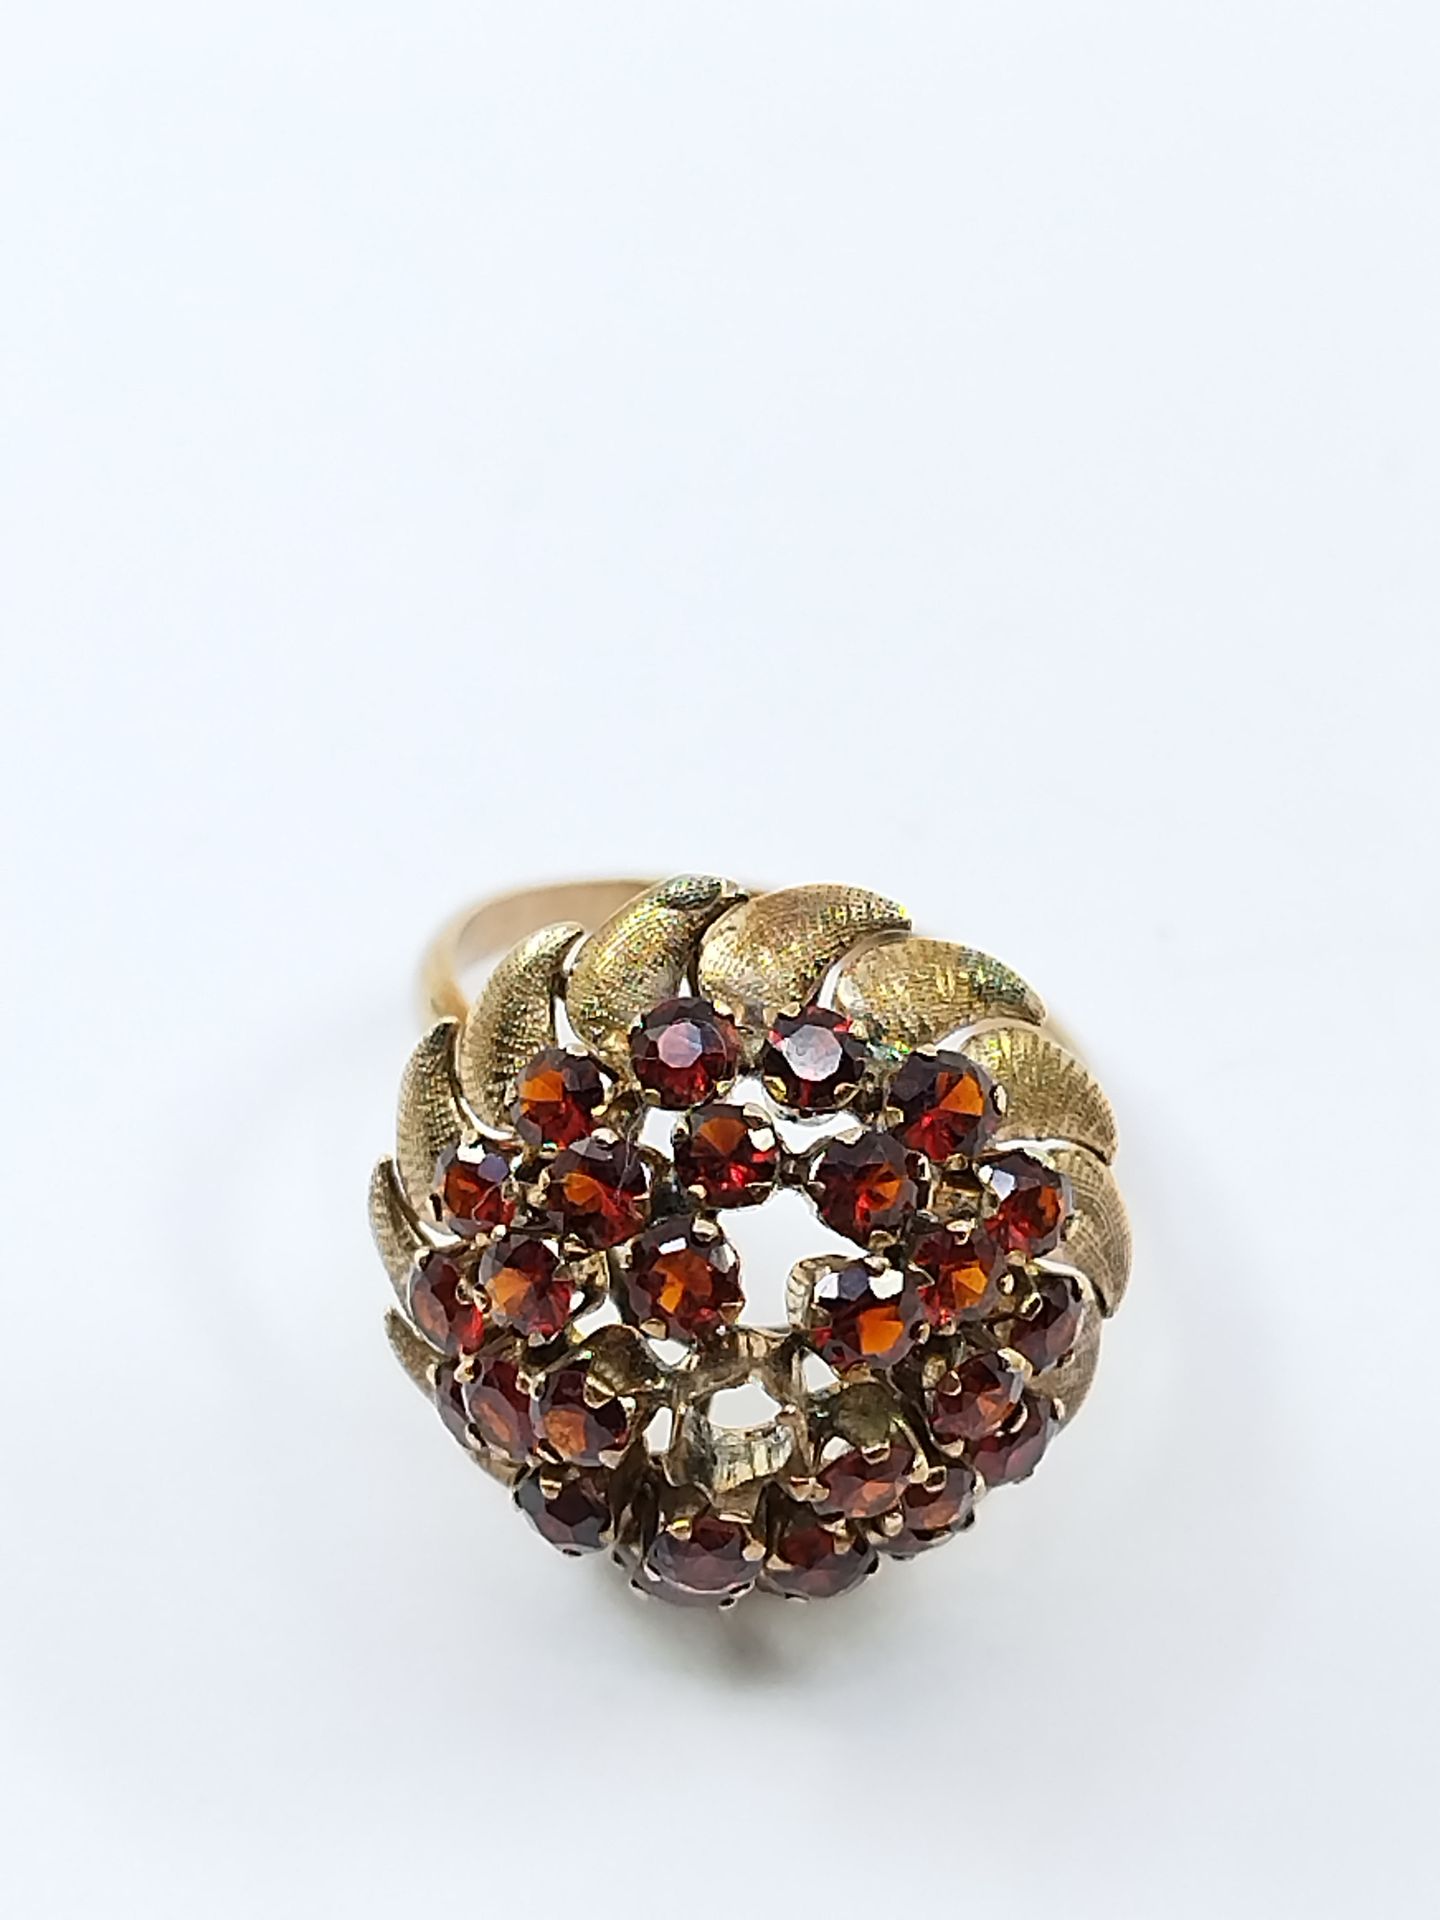 Null Kuppelförmiger Ring aus 750° Gelbgold mit Granatbesatz (fehlt)

Bruttogewic&hellip;